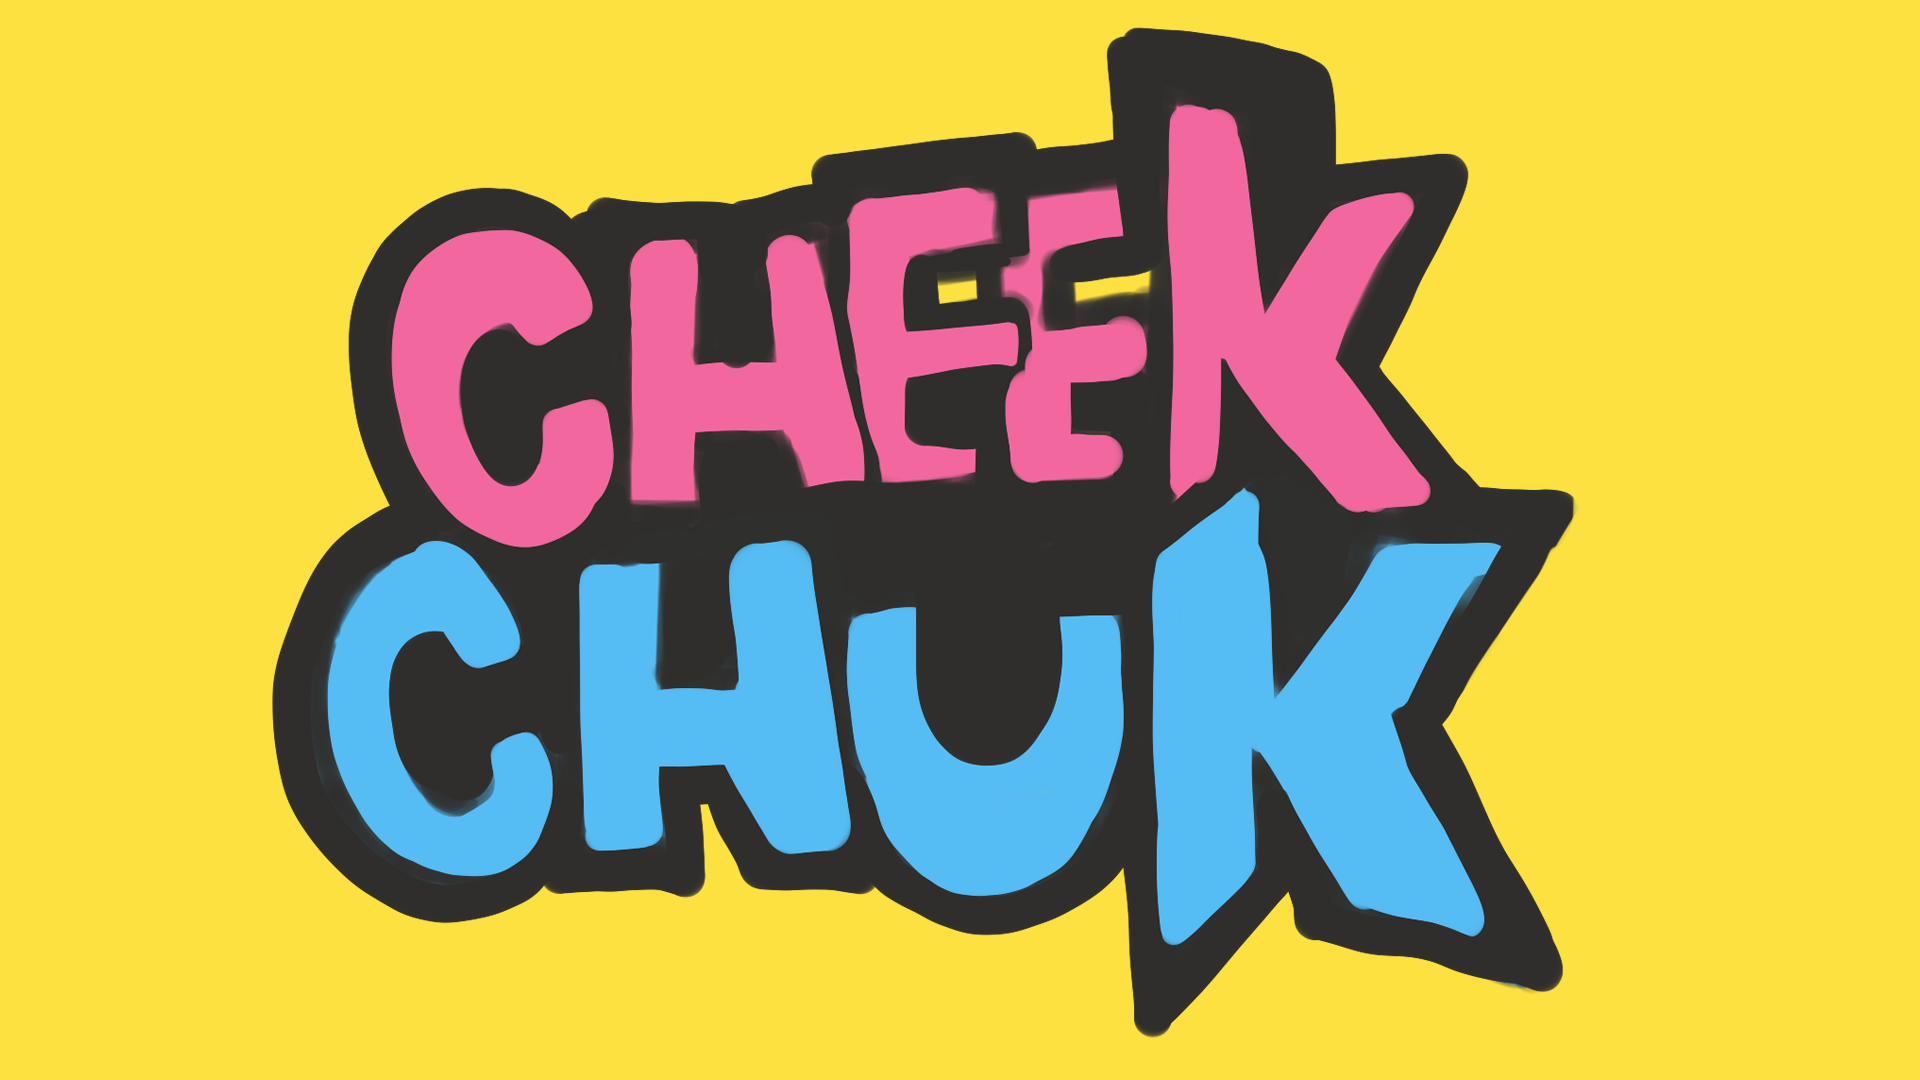 Cheek Chuk